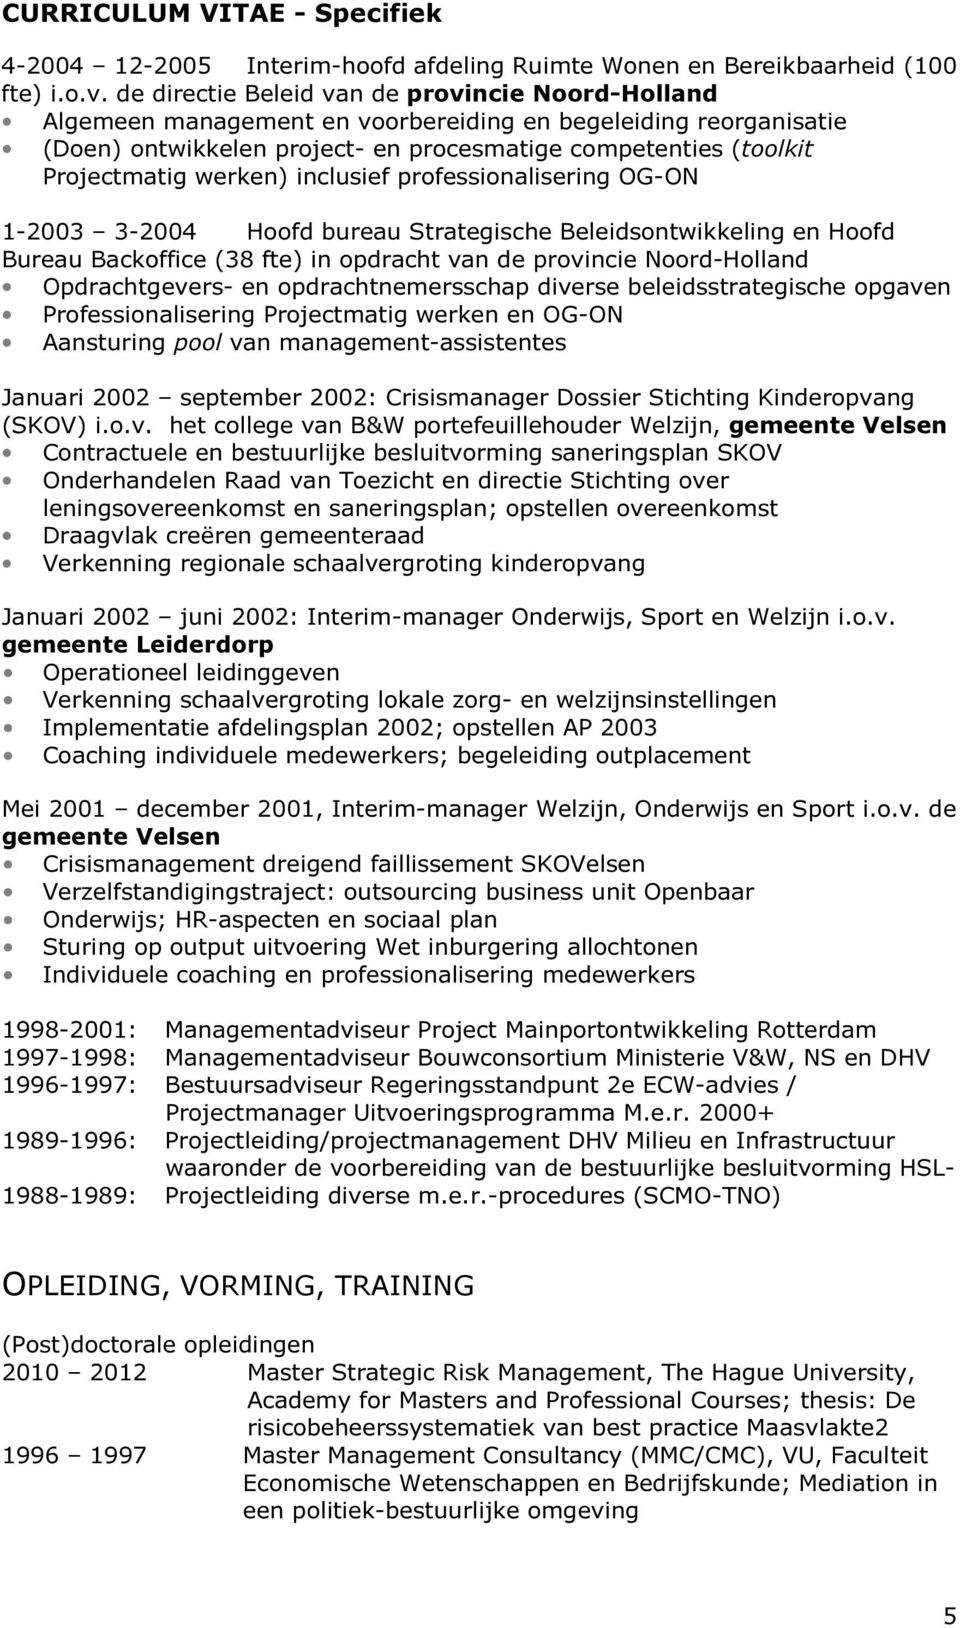 werken) inclusief professionalisering OG-ON 1-2003 3-2004 Hoofd bureau Strategische Beleidsontwikkeling en Hoofd Bureau Backoffice (38 fte) in opdracht van de provincie Noord-Holland Opdrachtgevers-